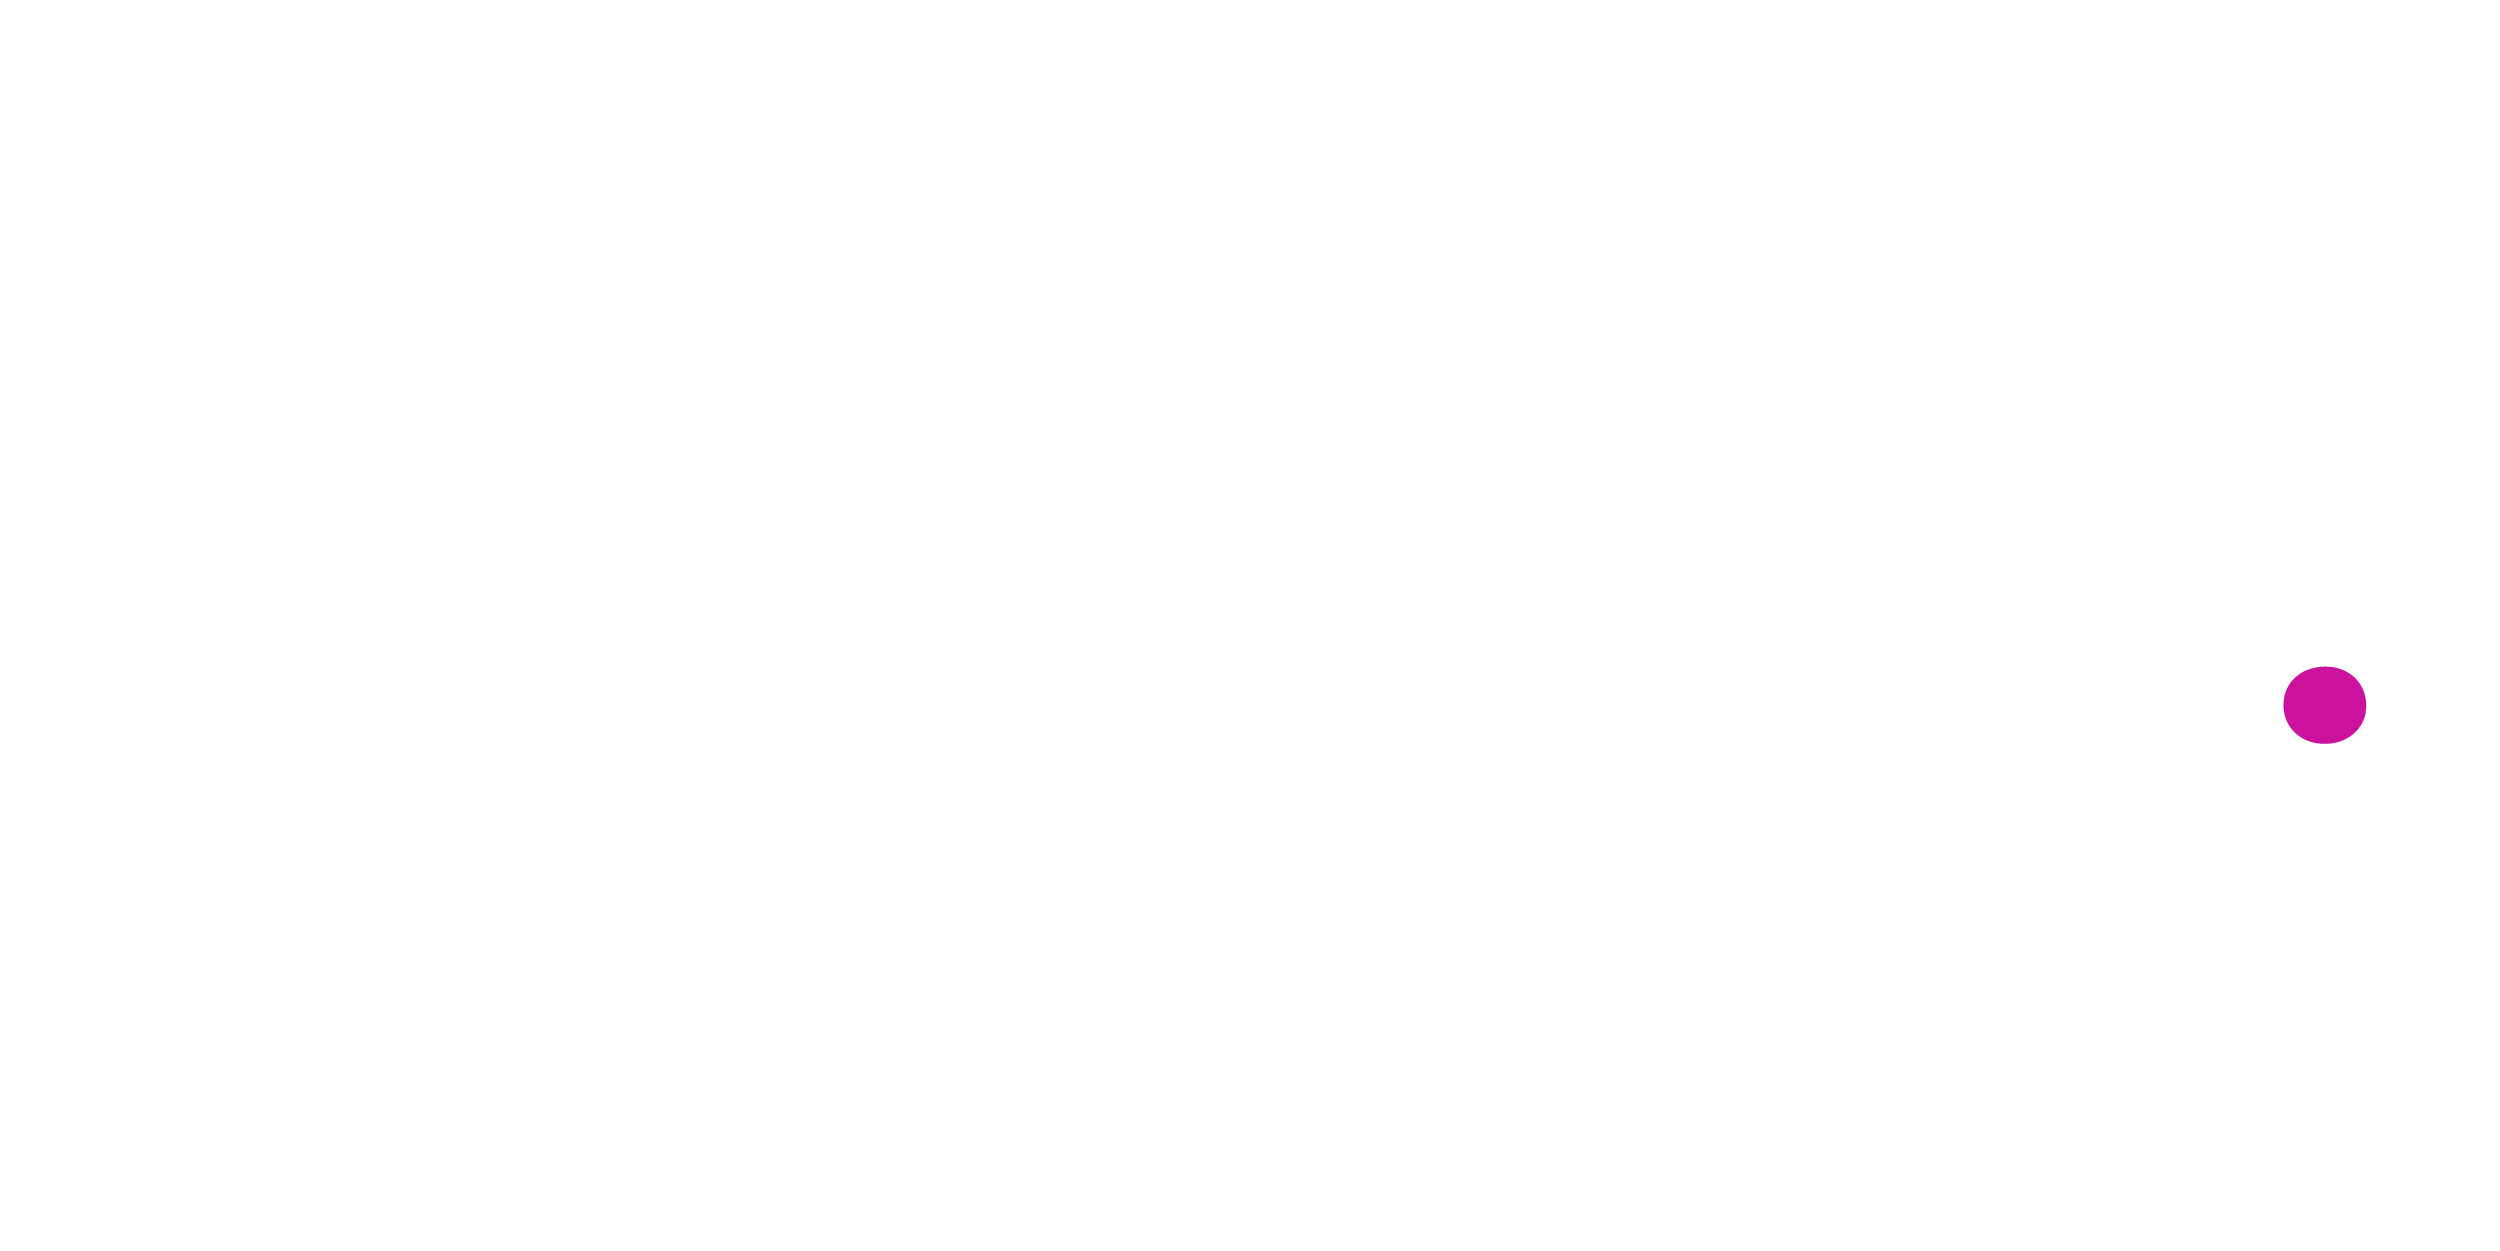  Market Intelligence image